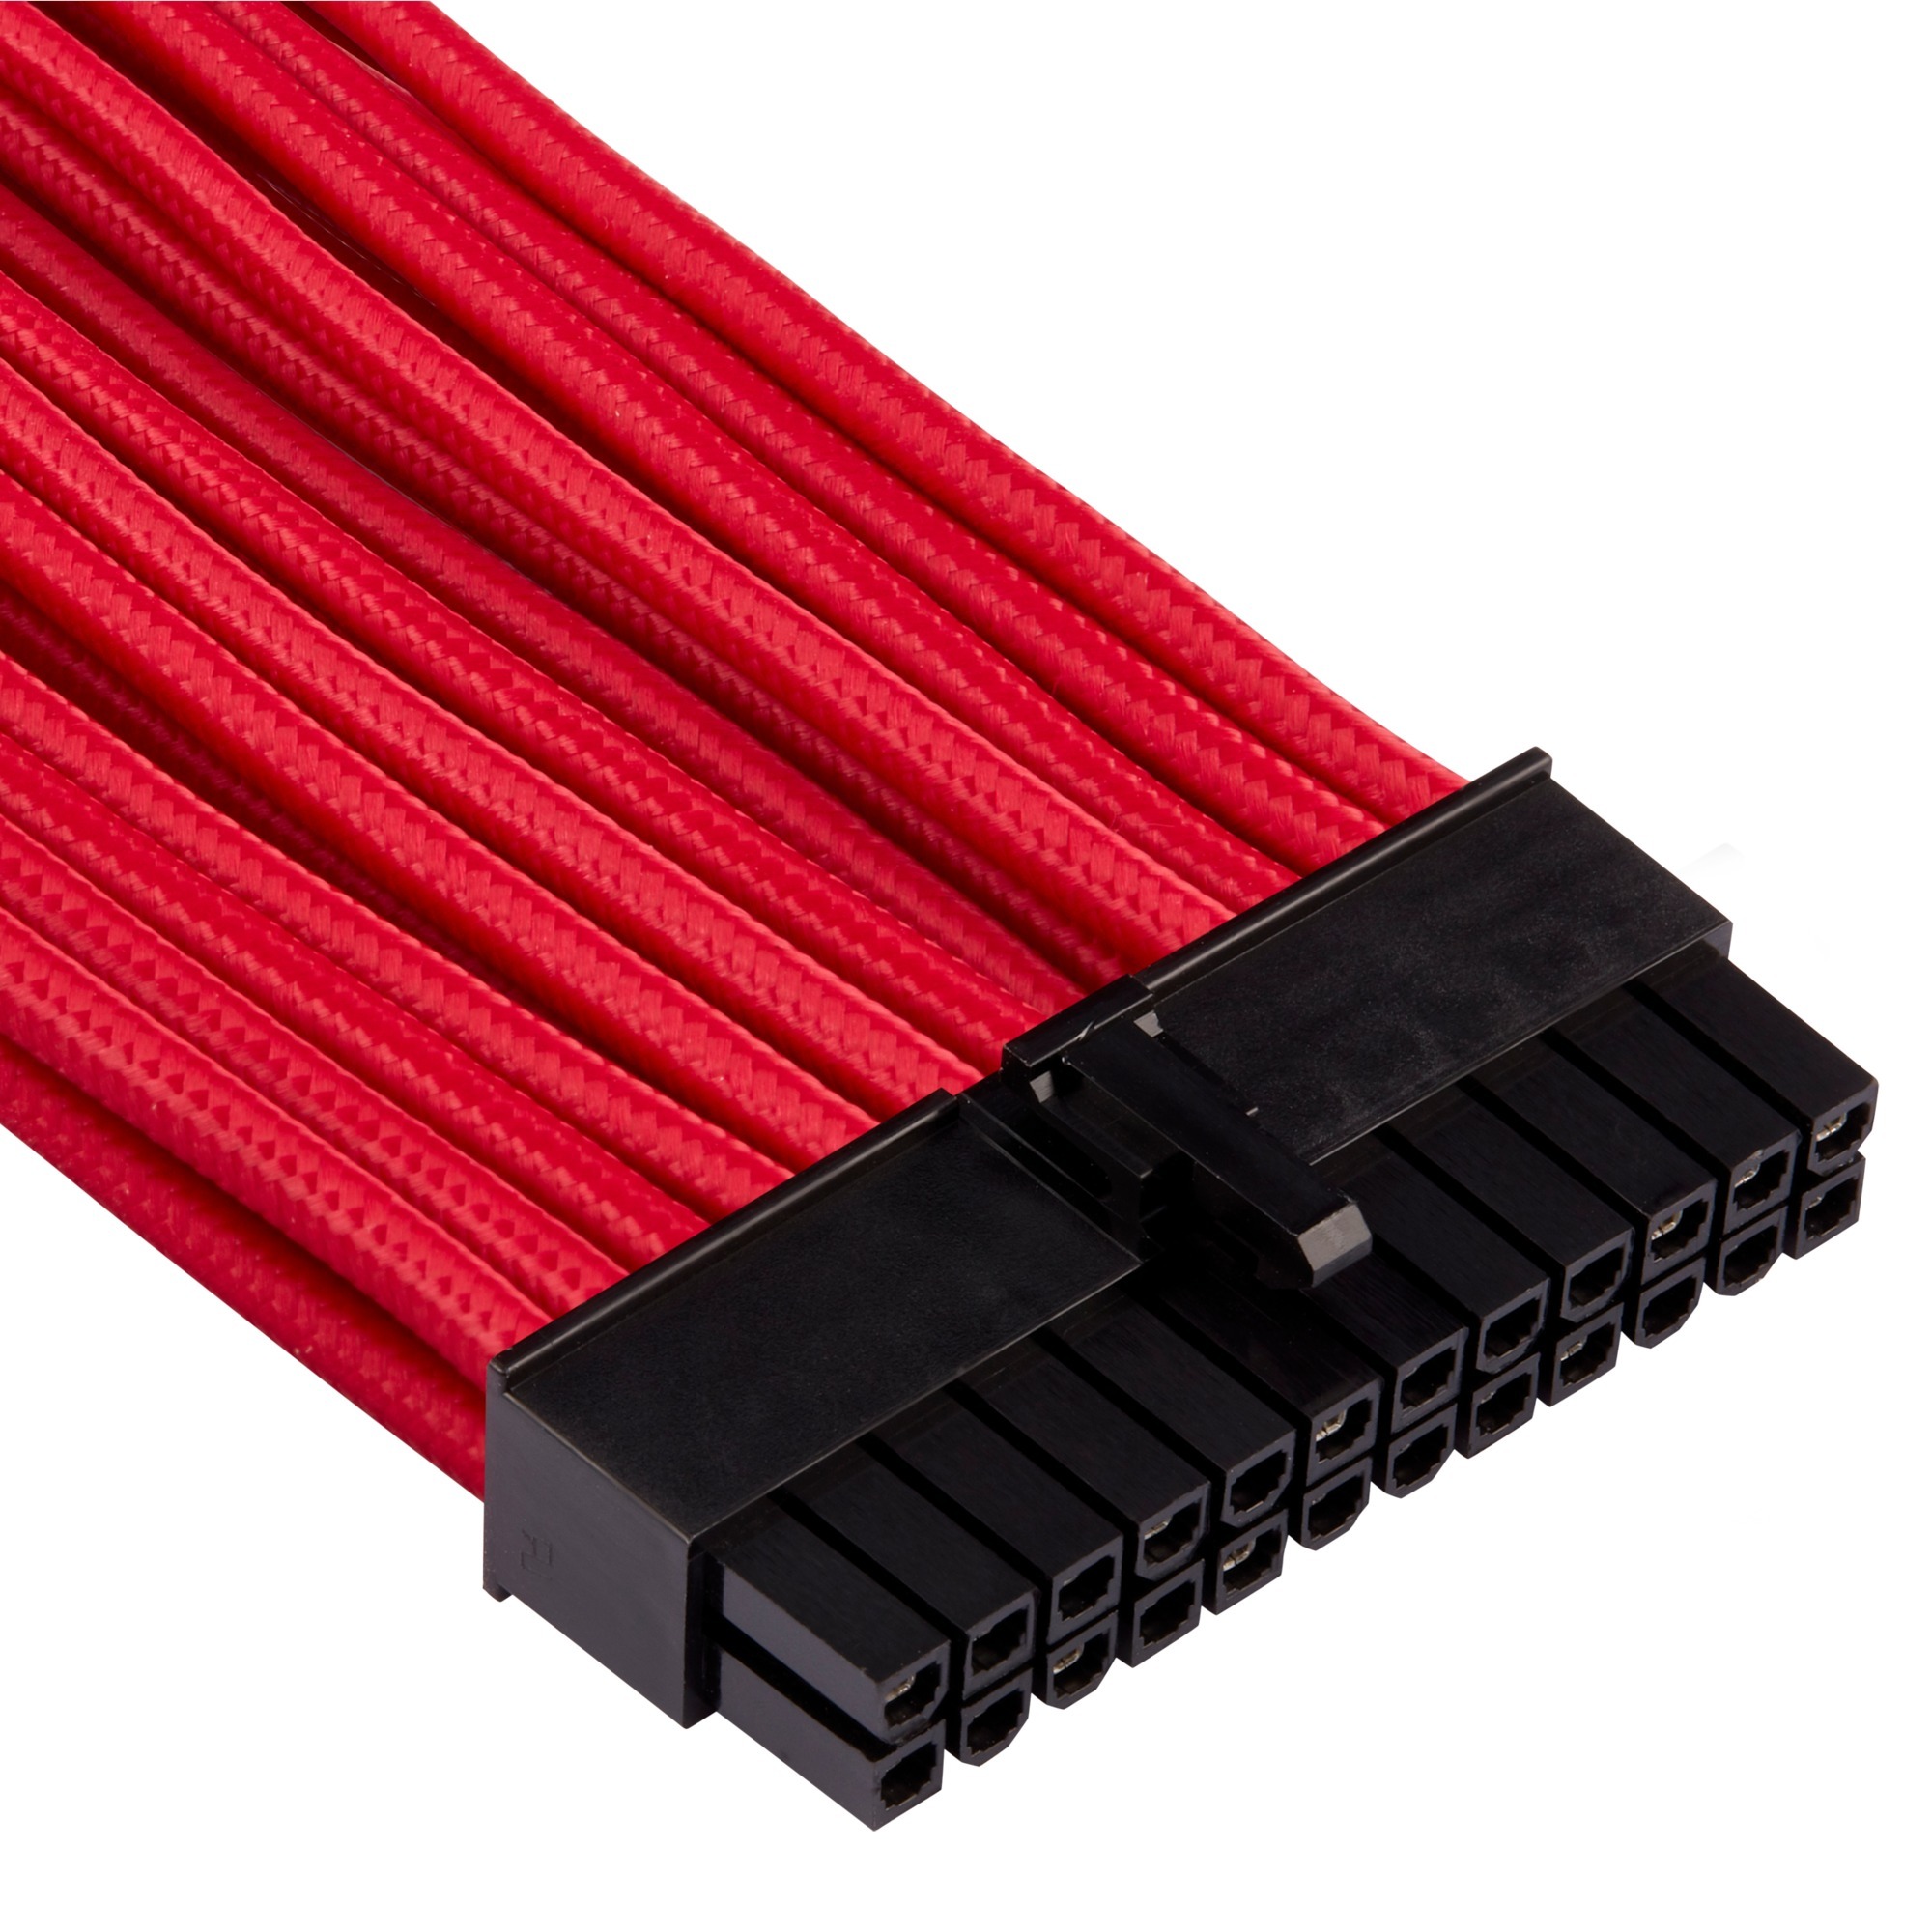 Image of Alternate - Premium Sleeved 24-Pin-ATX-Kabel Typ 4 Gen 4, Kabelmanagement online einkaufen bei Alternate